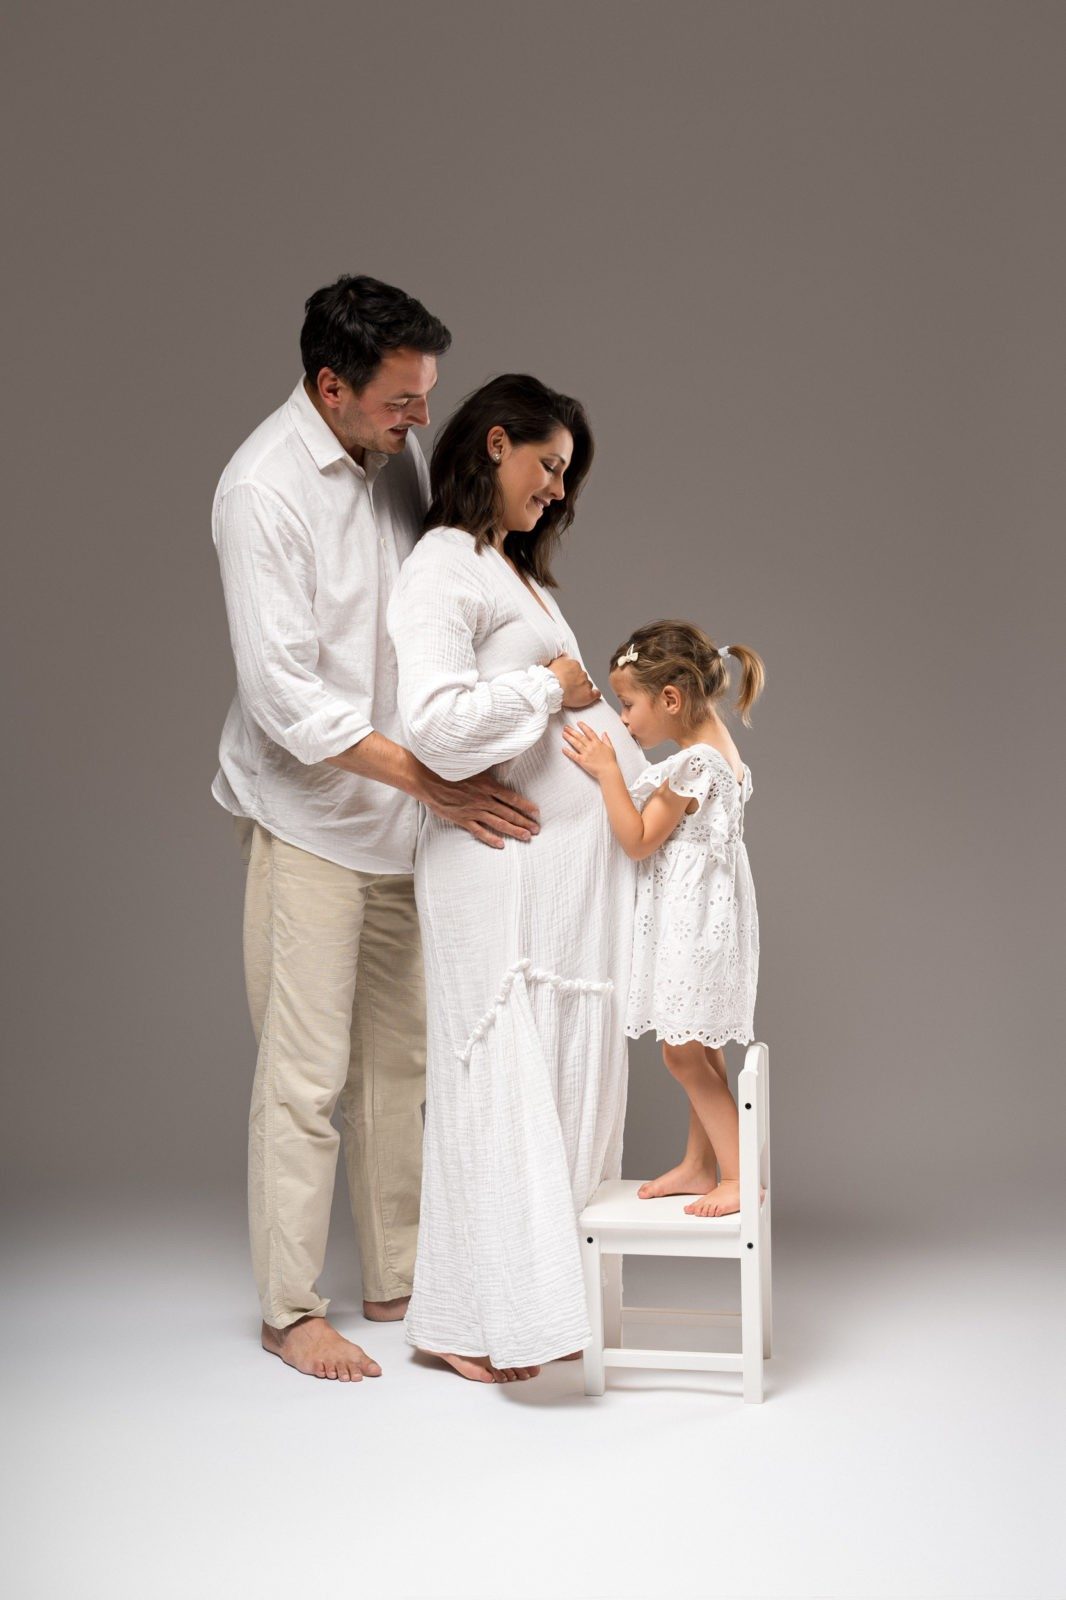 Družina treh stoji pred sivim ozadjem v studiu. Oče objema mamo in hčerko, mama drži belo tablo, hčerka stoji na belem stolčku.